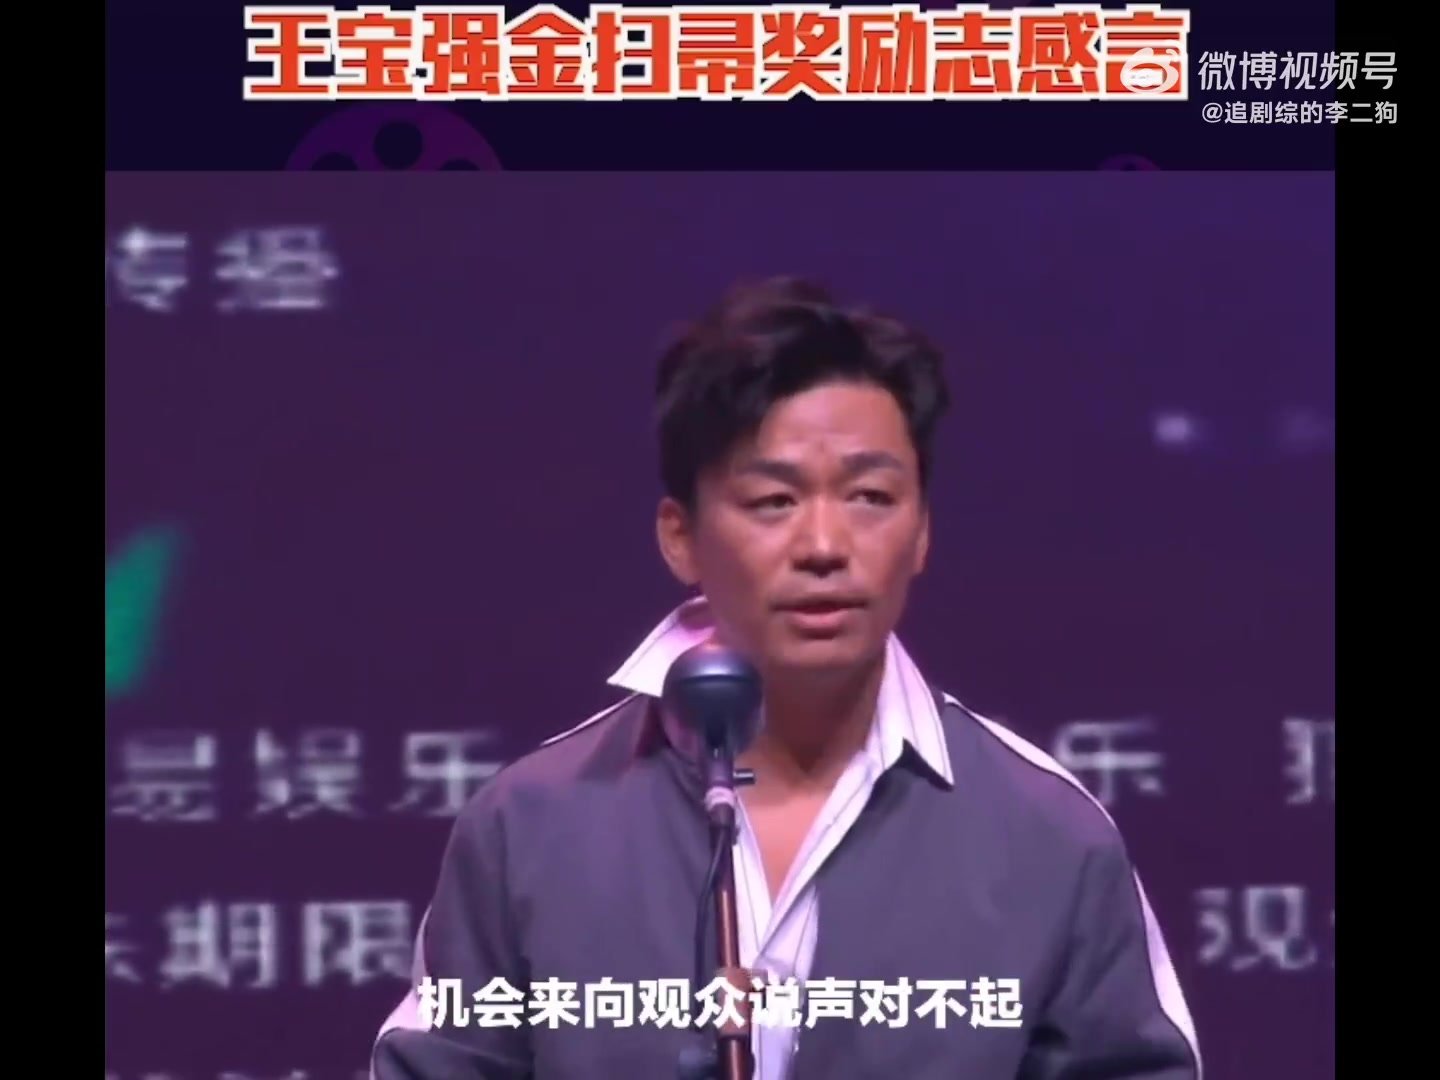 王宝强凭《大闹天竺》获“最令人失望导演奖” 上台亲自领奖并致歉观众